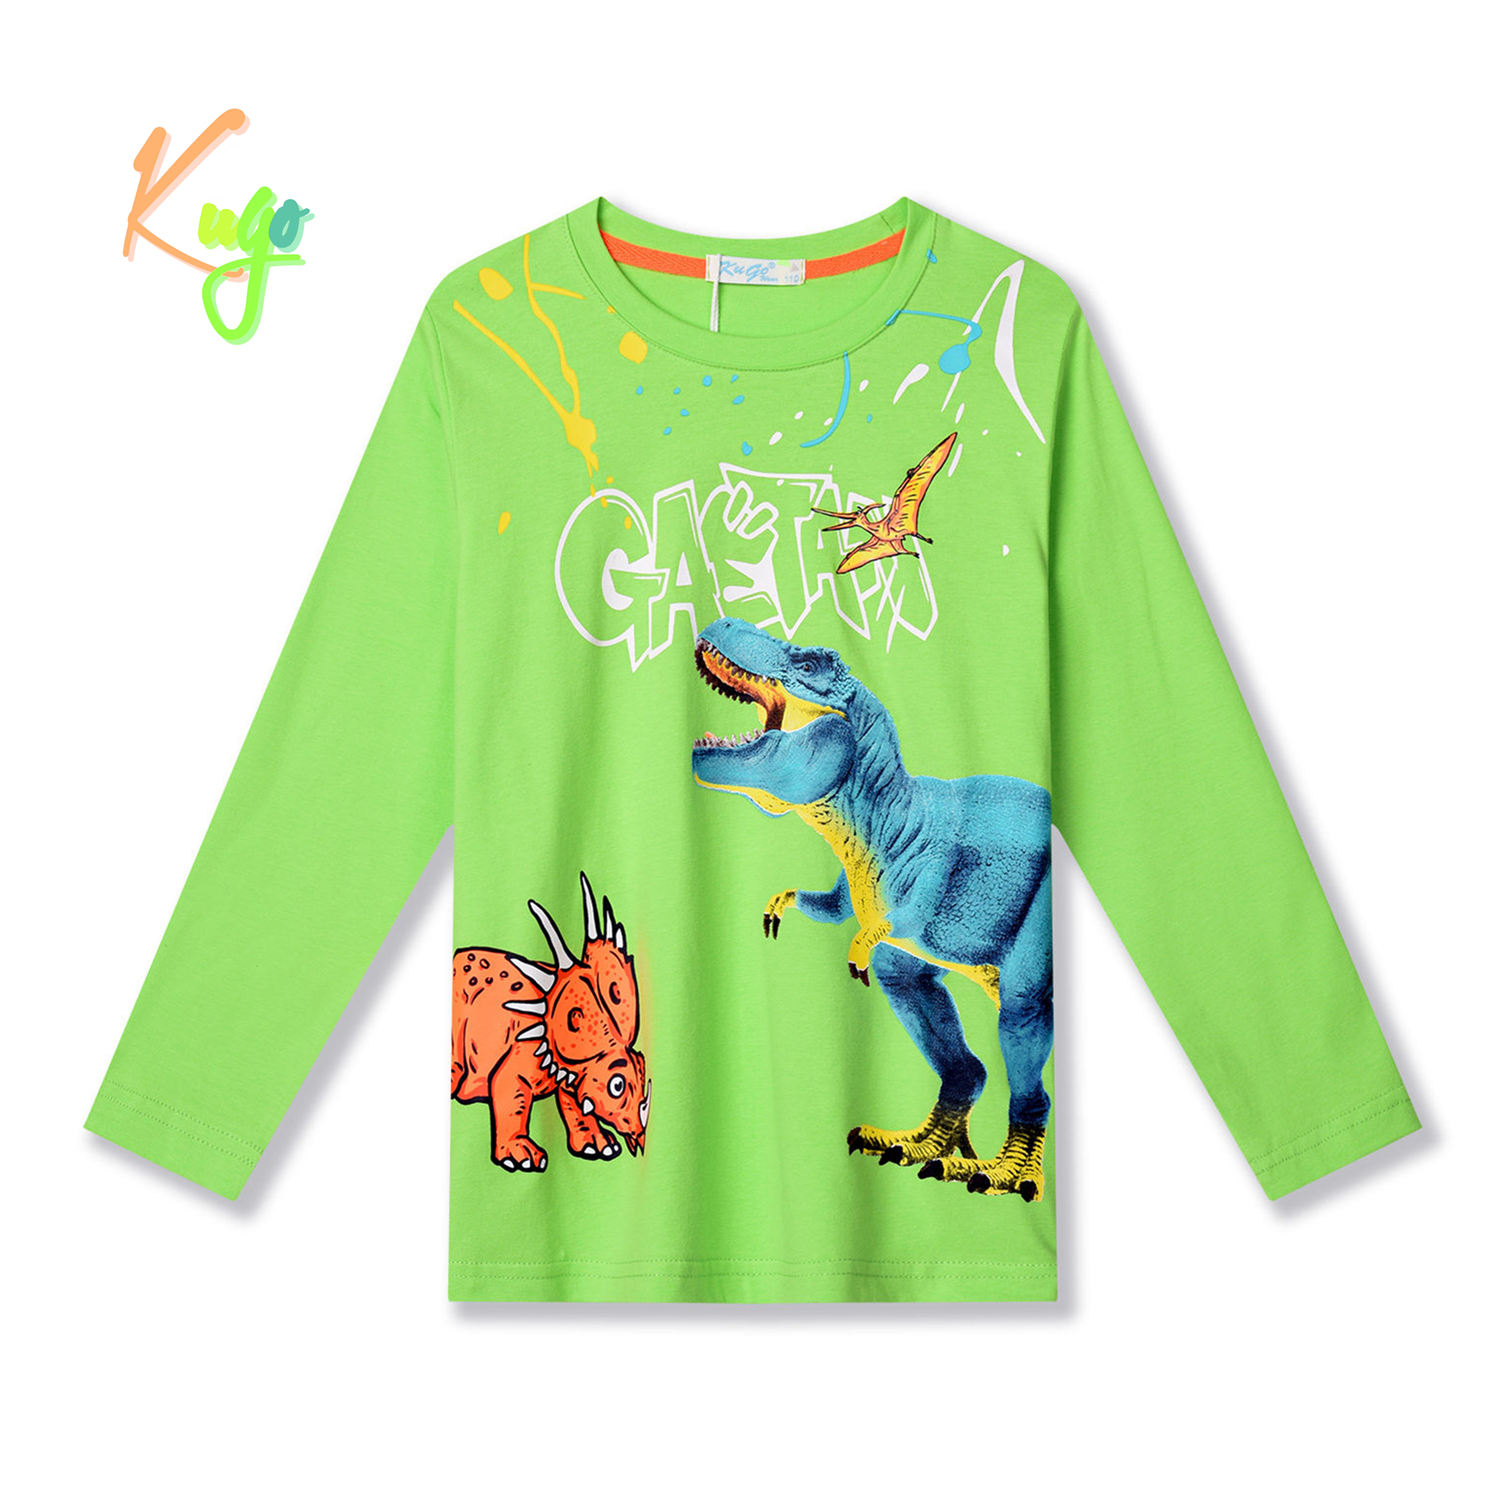 Chlapecké tričko - KUGO HC9307, zelinkavá Barva: Zelená, Velikost: 110